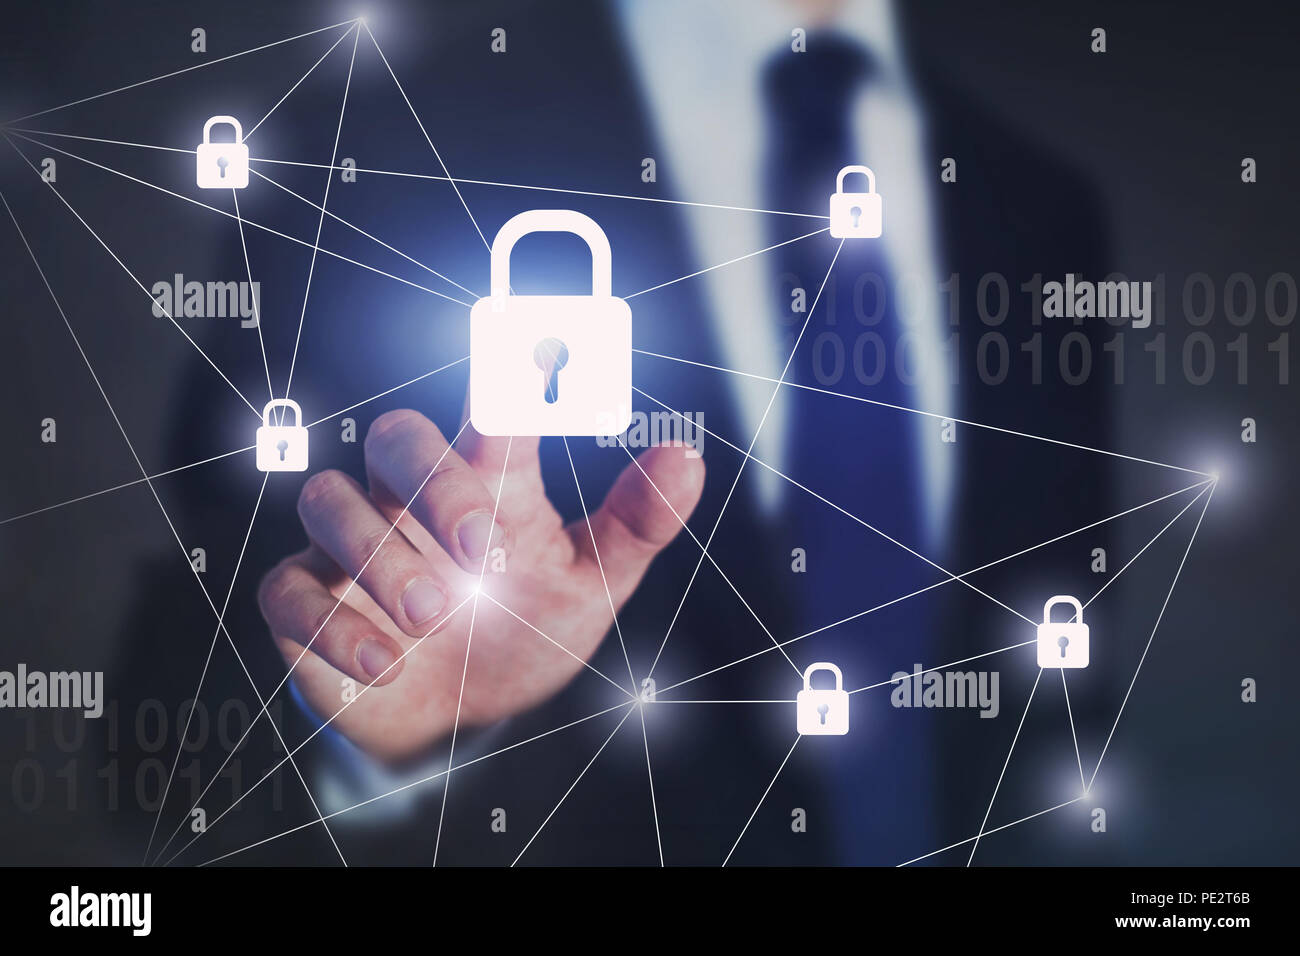 Internet Network Security Konzept, business Mann berühren auf virtuellen Bildschirm, Schutz gegen die Abwehr von Cyberattacken Stockfoto